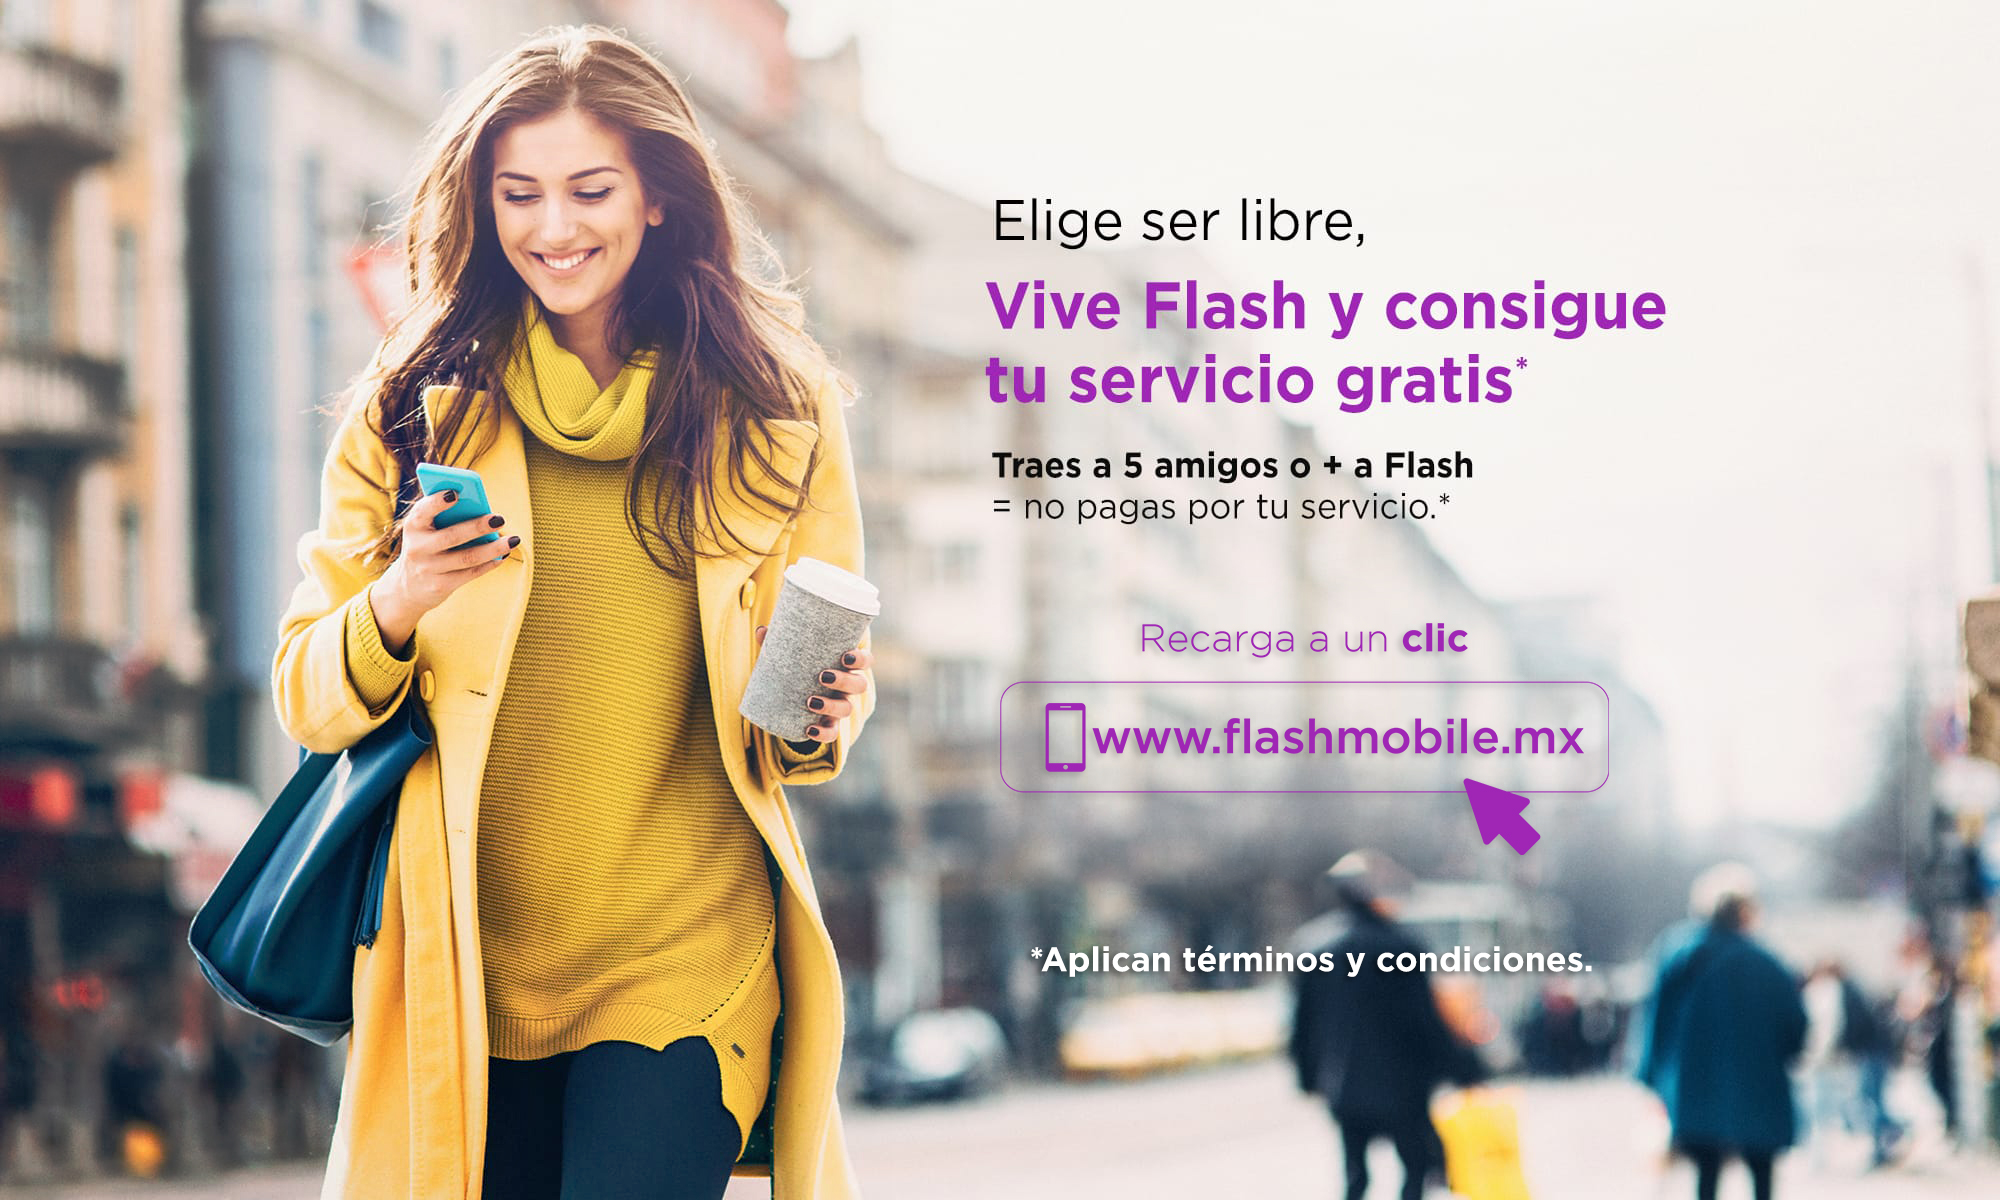 Flash Mobile te ofrece servicio móvil gratis. Revisa los términos y condiciones.